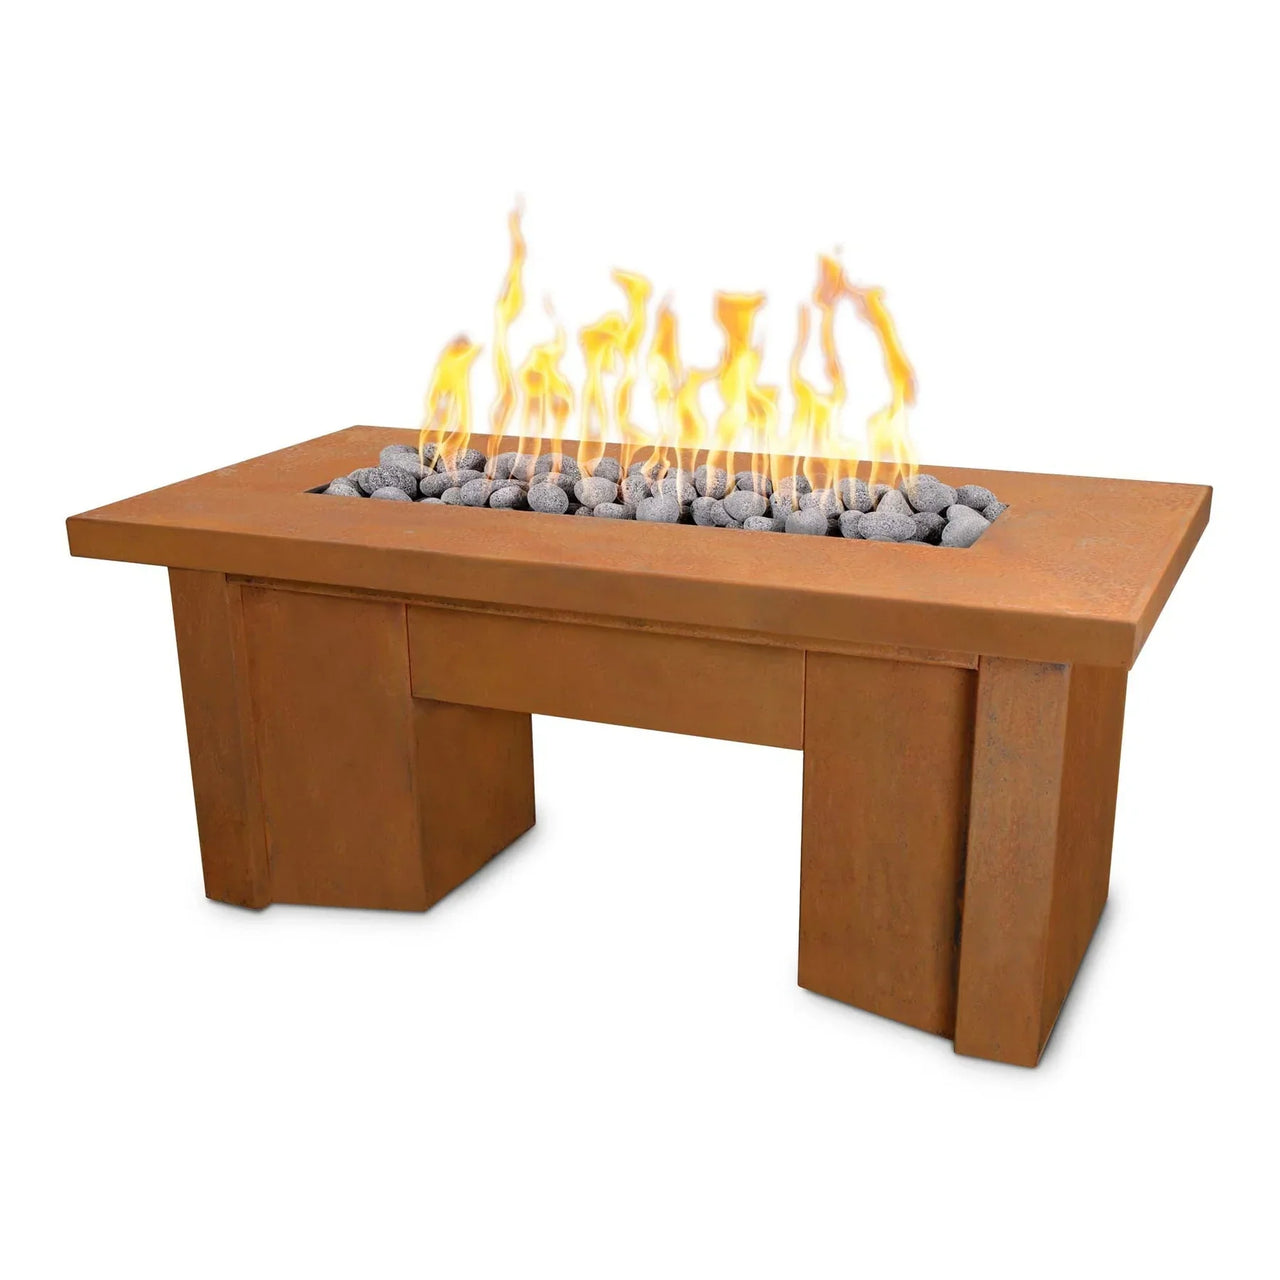 The Outdoor Plus 78" Rectangular Alameda Corten Steel Fire Table